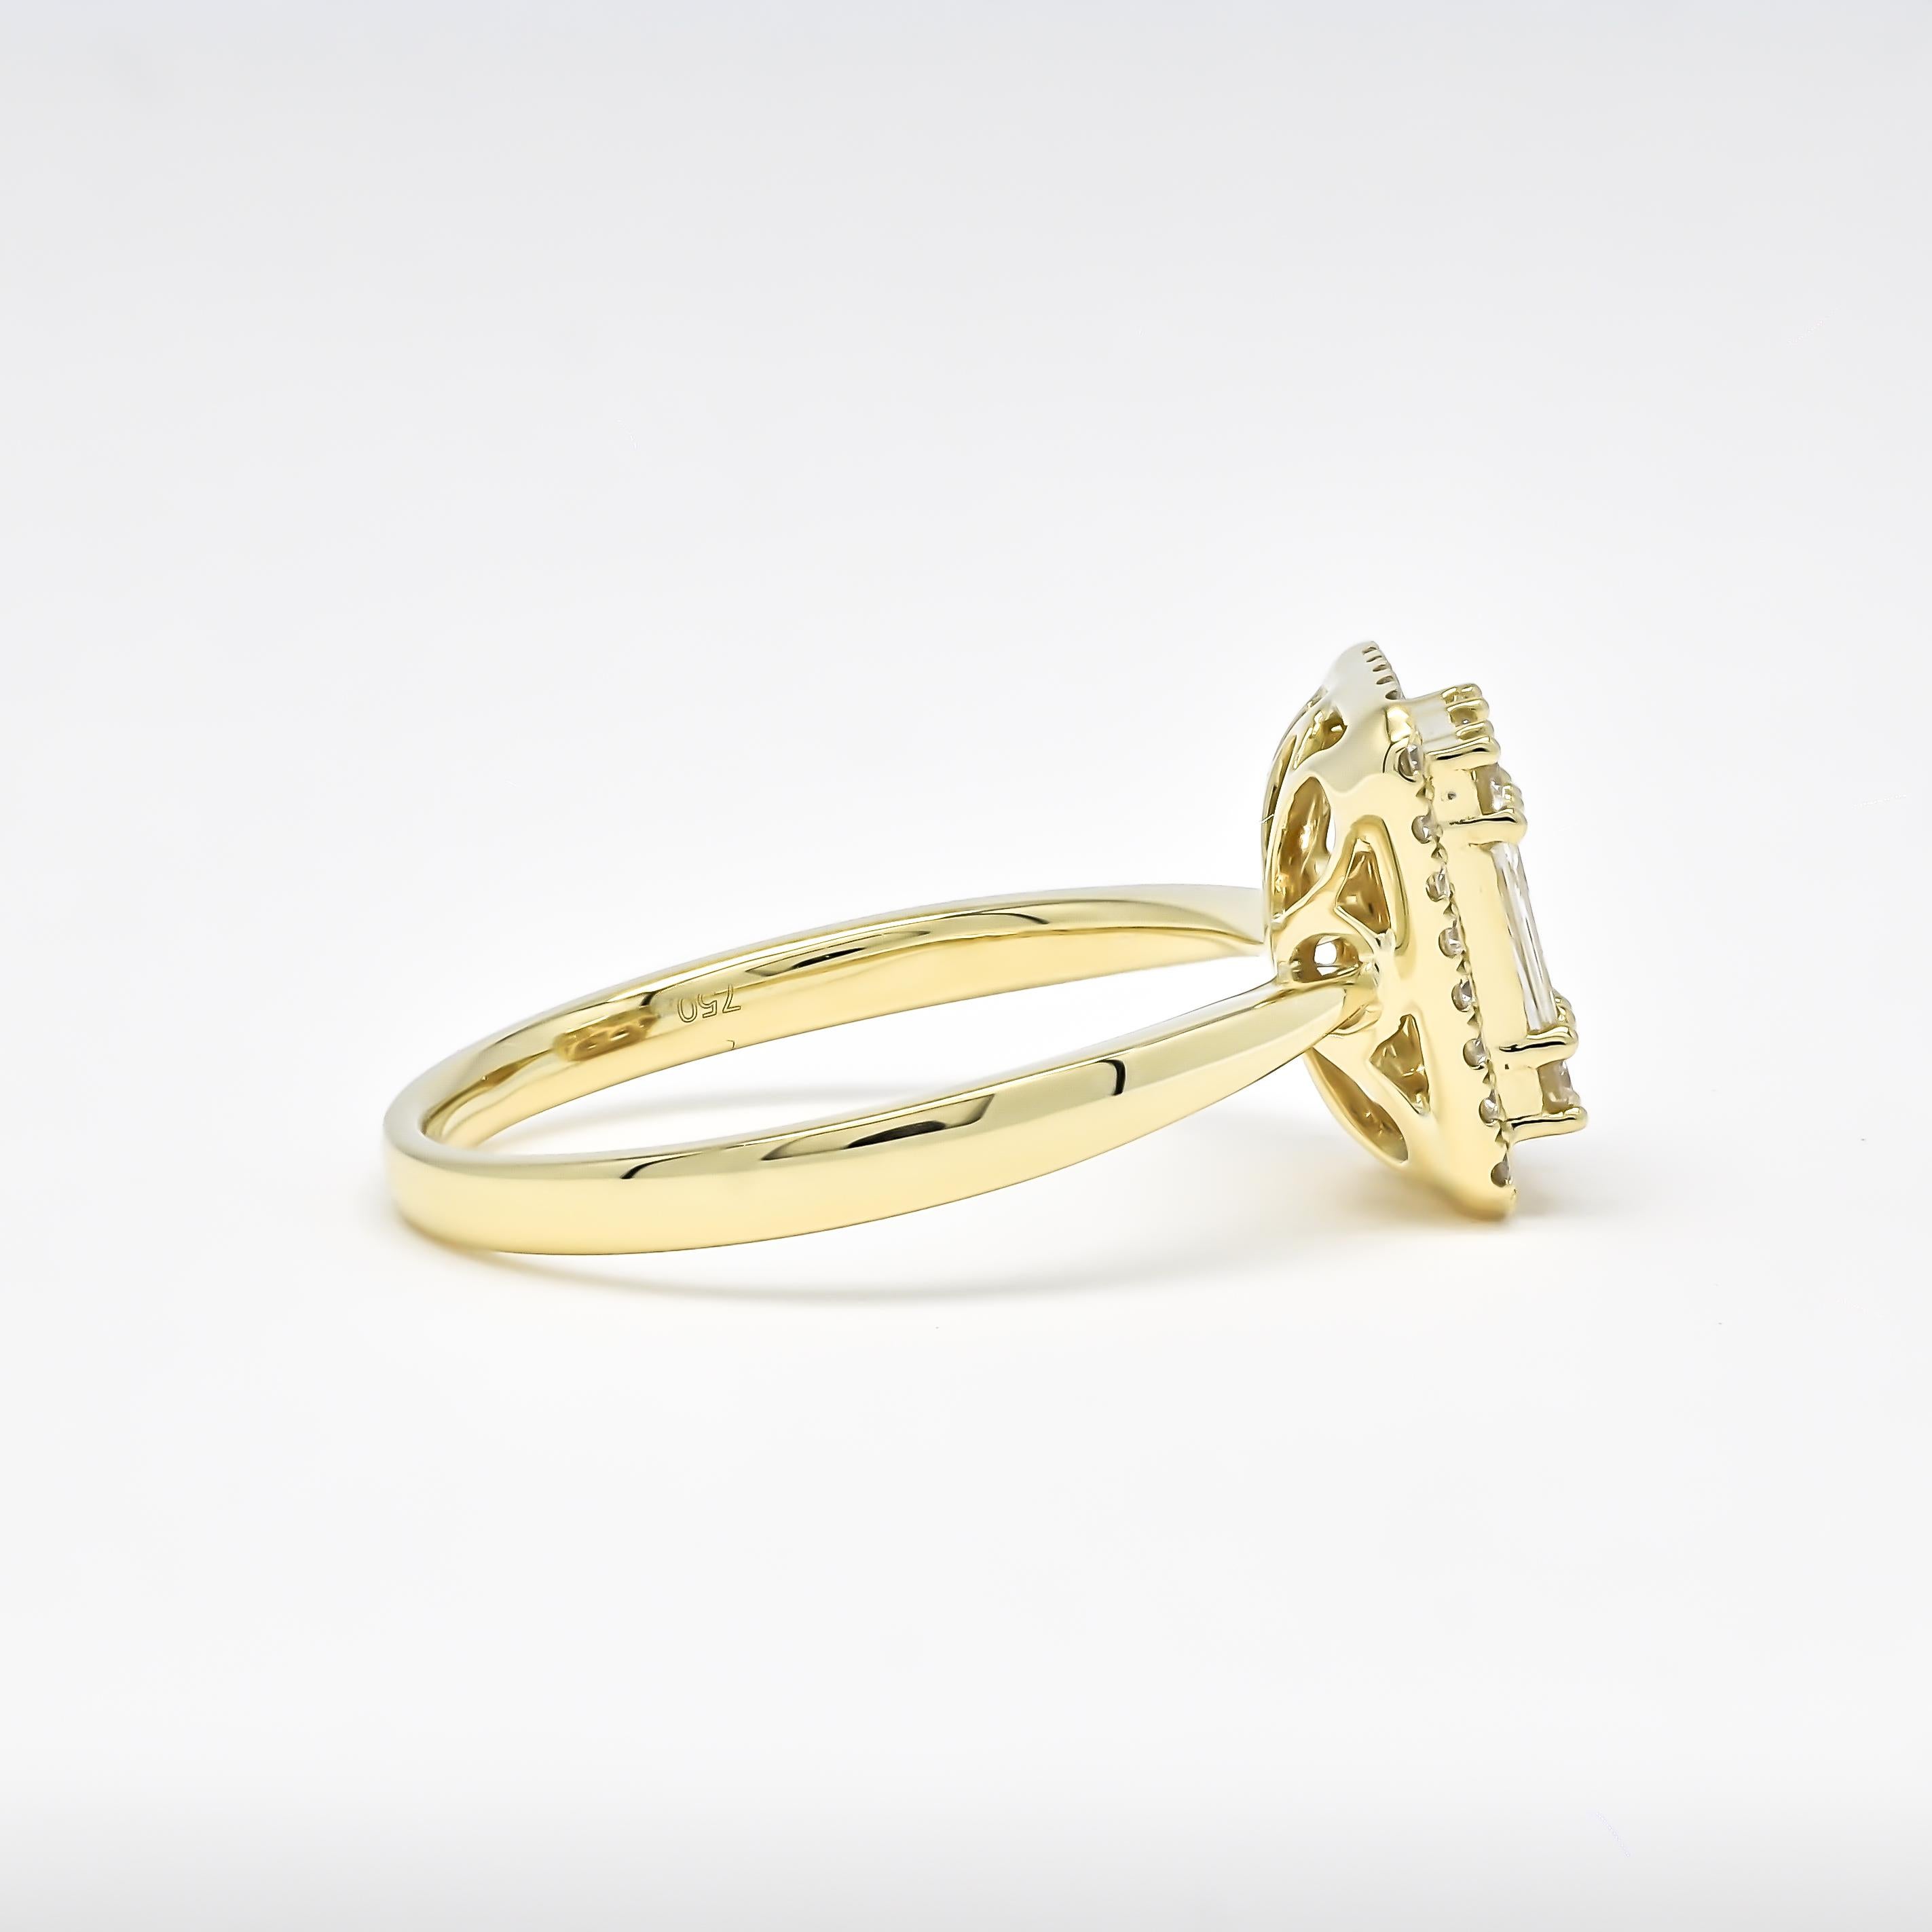 Ein Diamant-Cluster-Ring mit Baguette- und runden Diamanten ist eine schöne und anspruchsvolle Wahl für einen zierlichen Verlobungsring. In der Mitte des Rings befindet sich eine Gruppe von Diamanten im Rund- und Baguetteschliff, die dem Design eine